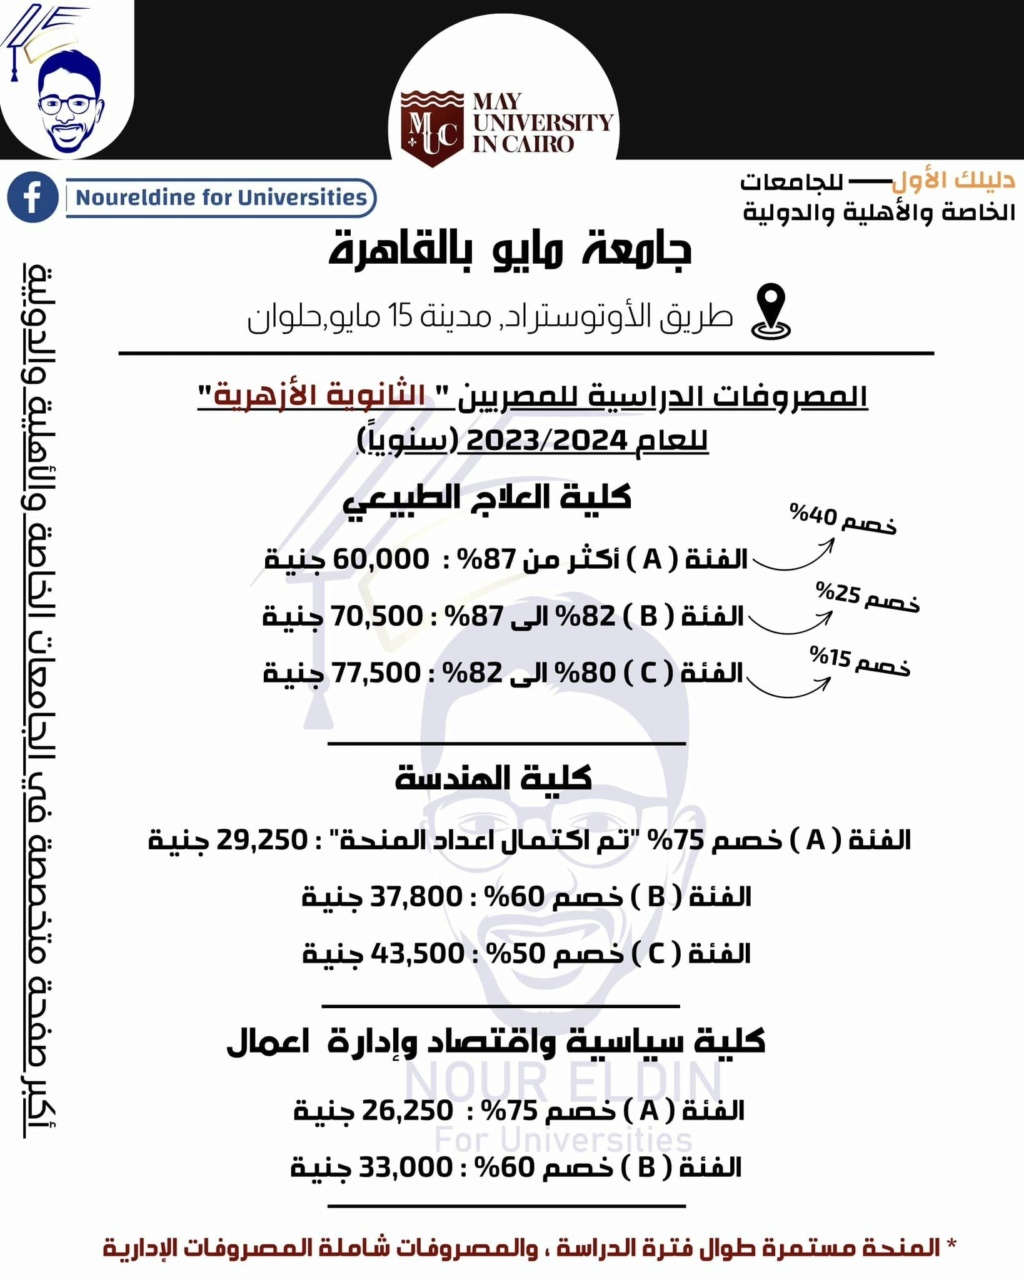 تظلمات الثانوية العامة - منح جامعة مايو بالقاهرة لطلاب الثانوية العامة والأزهرية 2023 . 2024 275